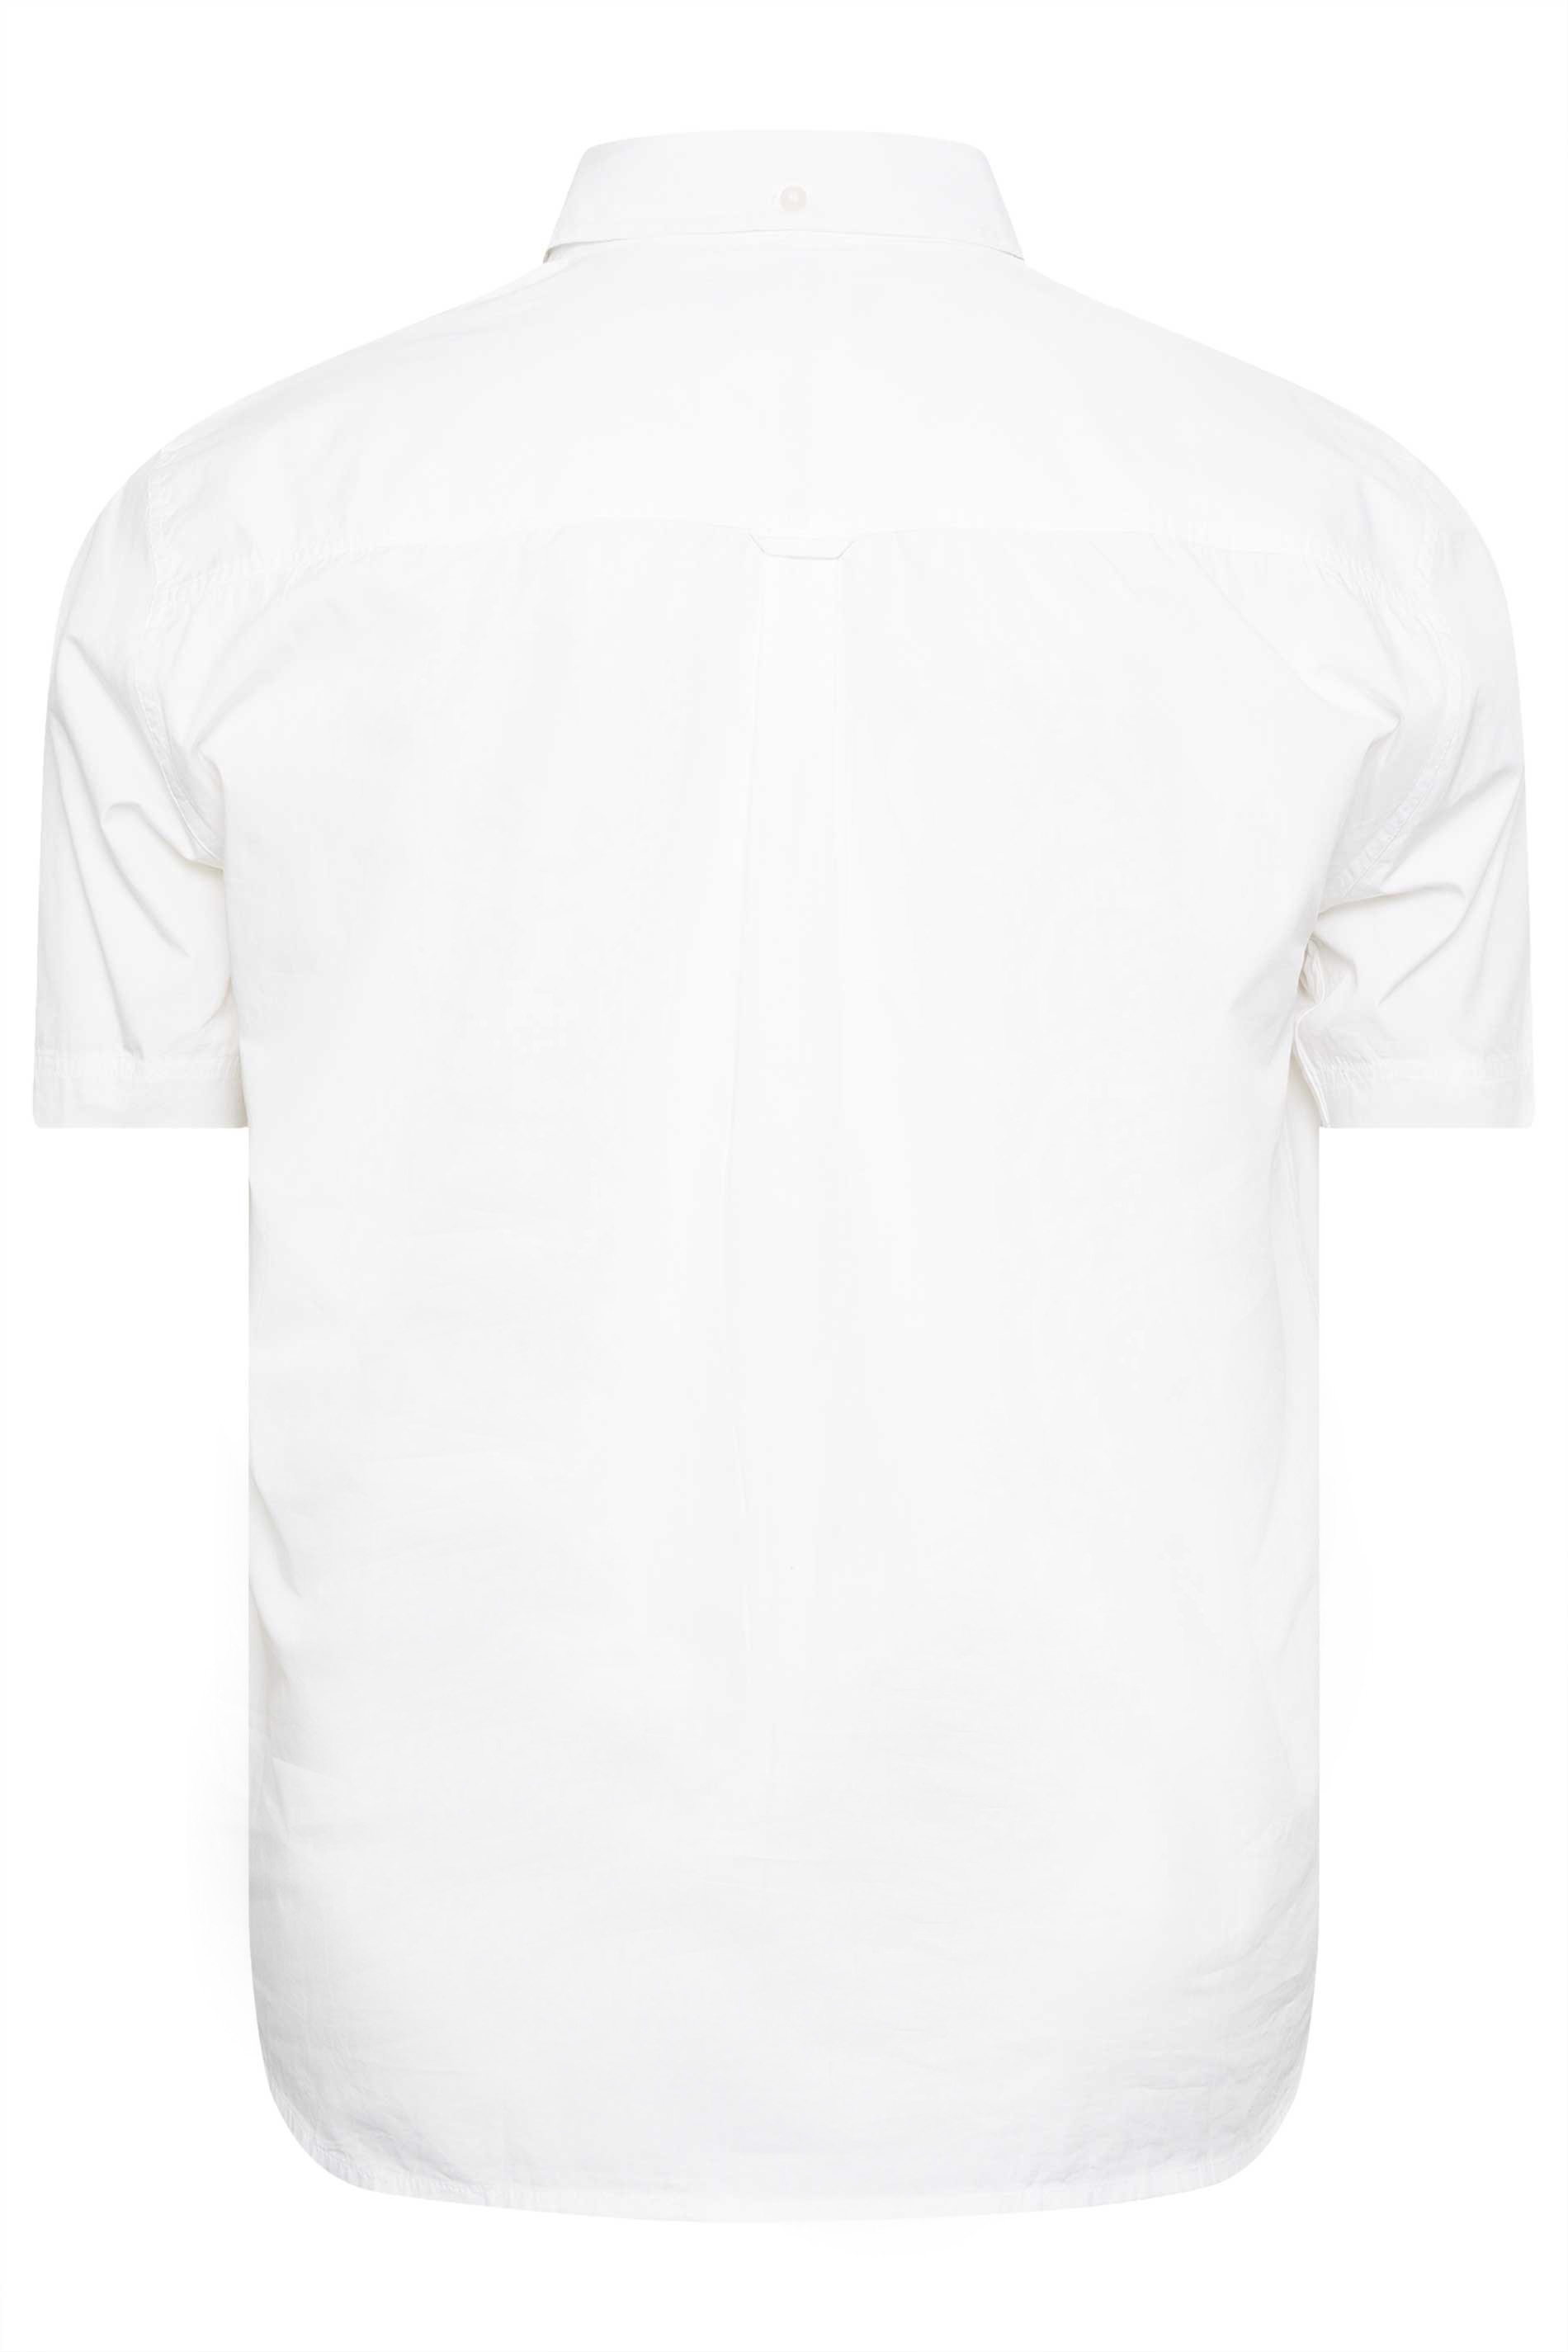 BadRhino Big & Tall White Poplin Short Sleeve Shirt | BadRhino 3